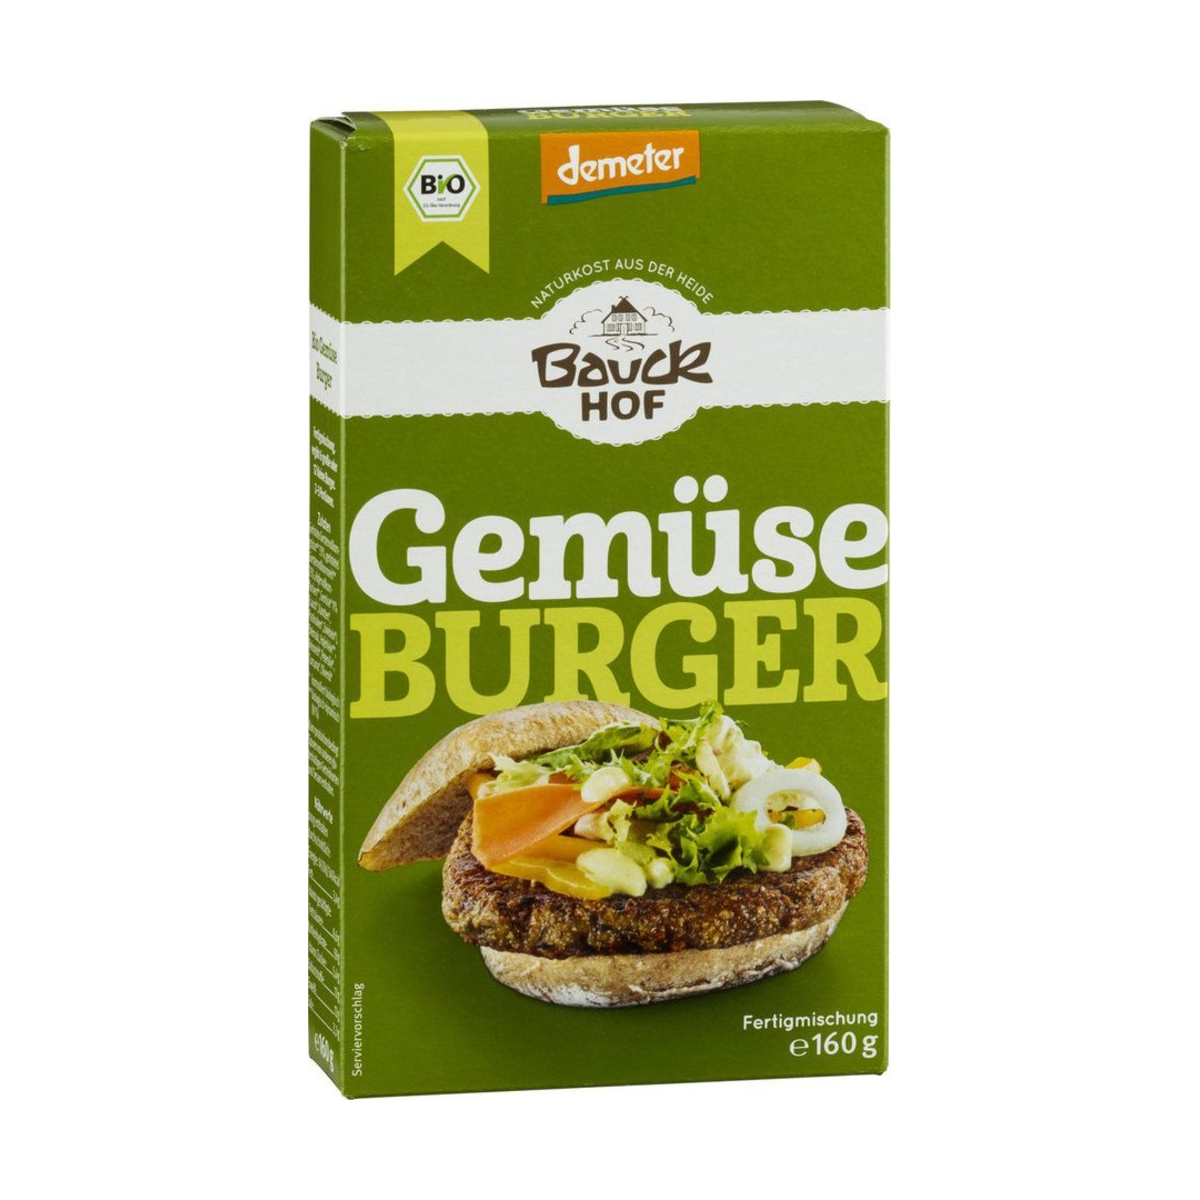 Demeter Gemüse Burger Bauck